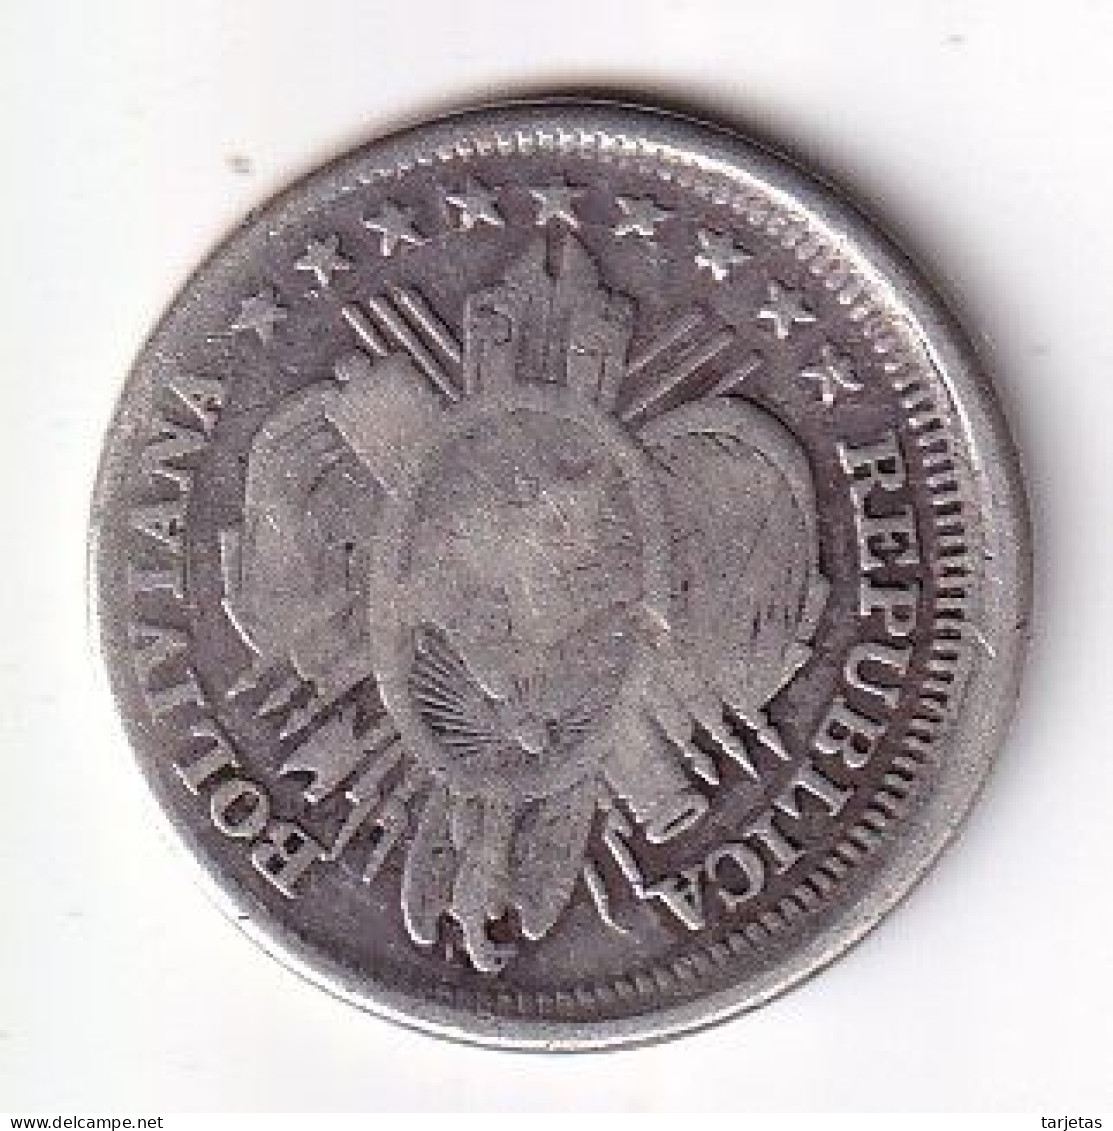 MONEDA DE PLATA DE BOLIVIA DE 20 CENTAVOS DEL AÑO 1890  (COIN) SILVER,ARGENT. - Bolivië